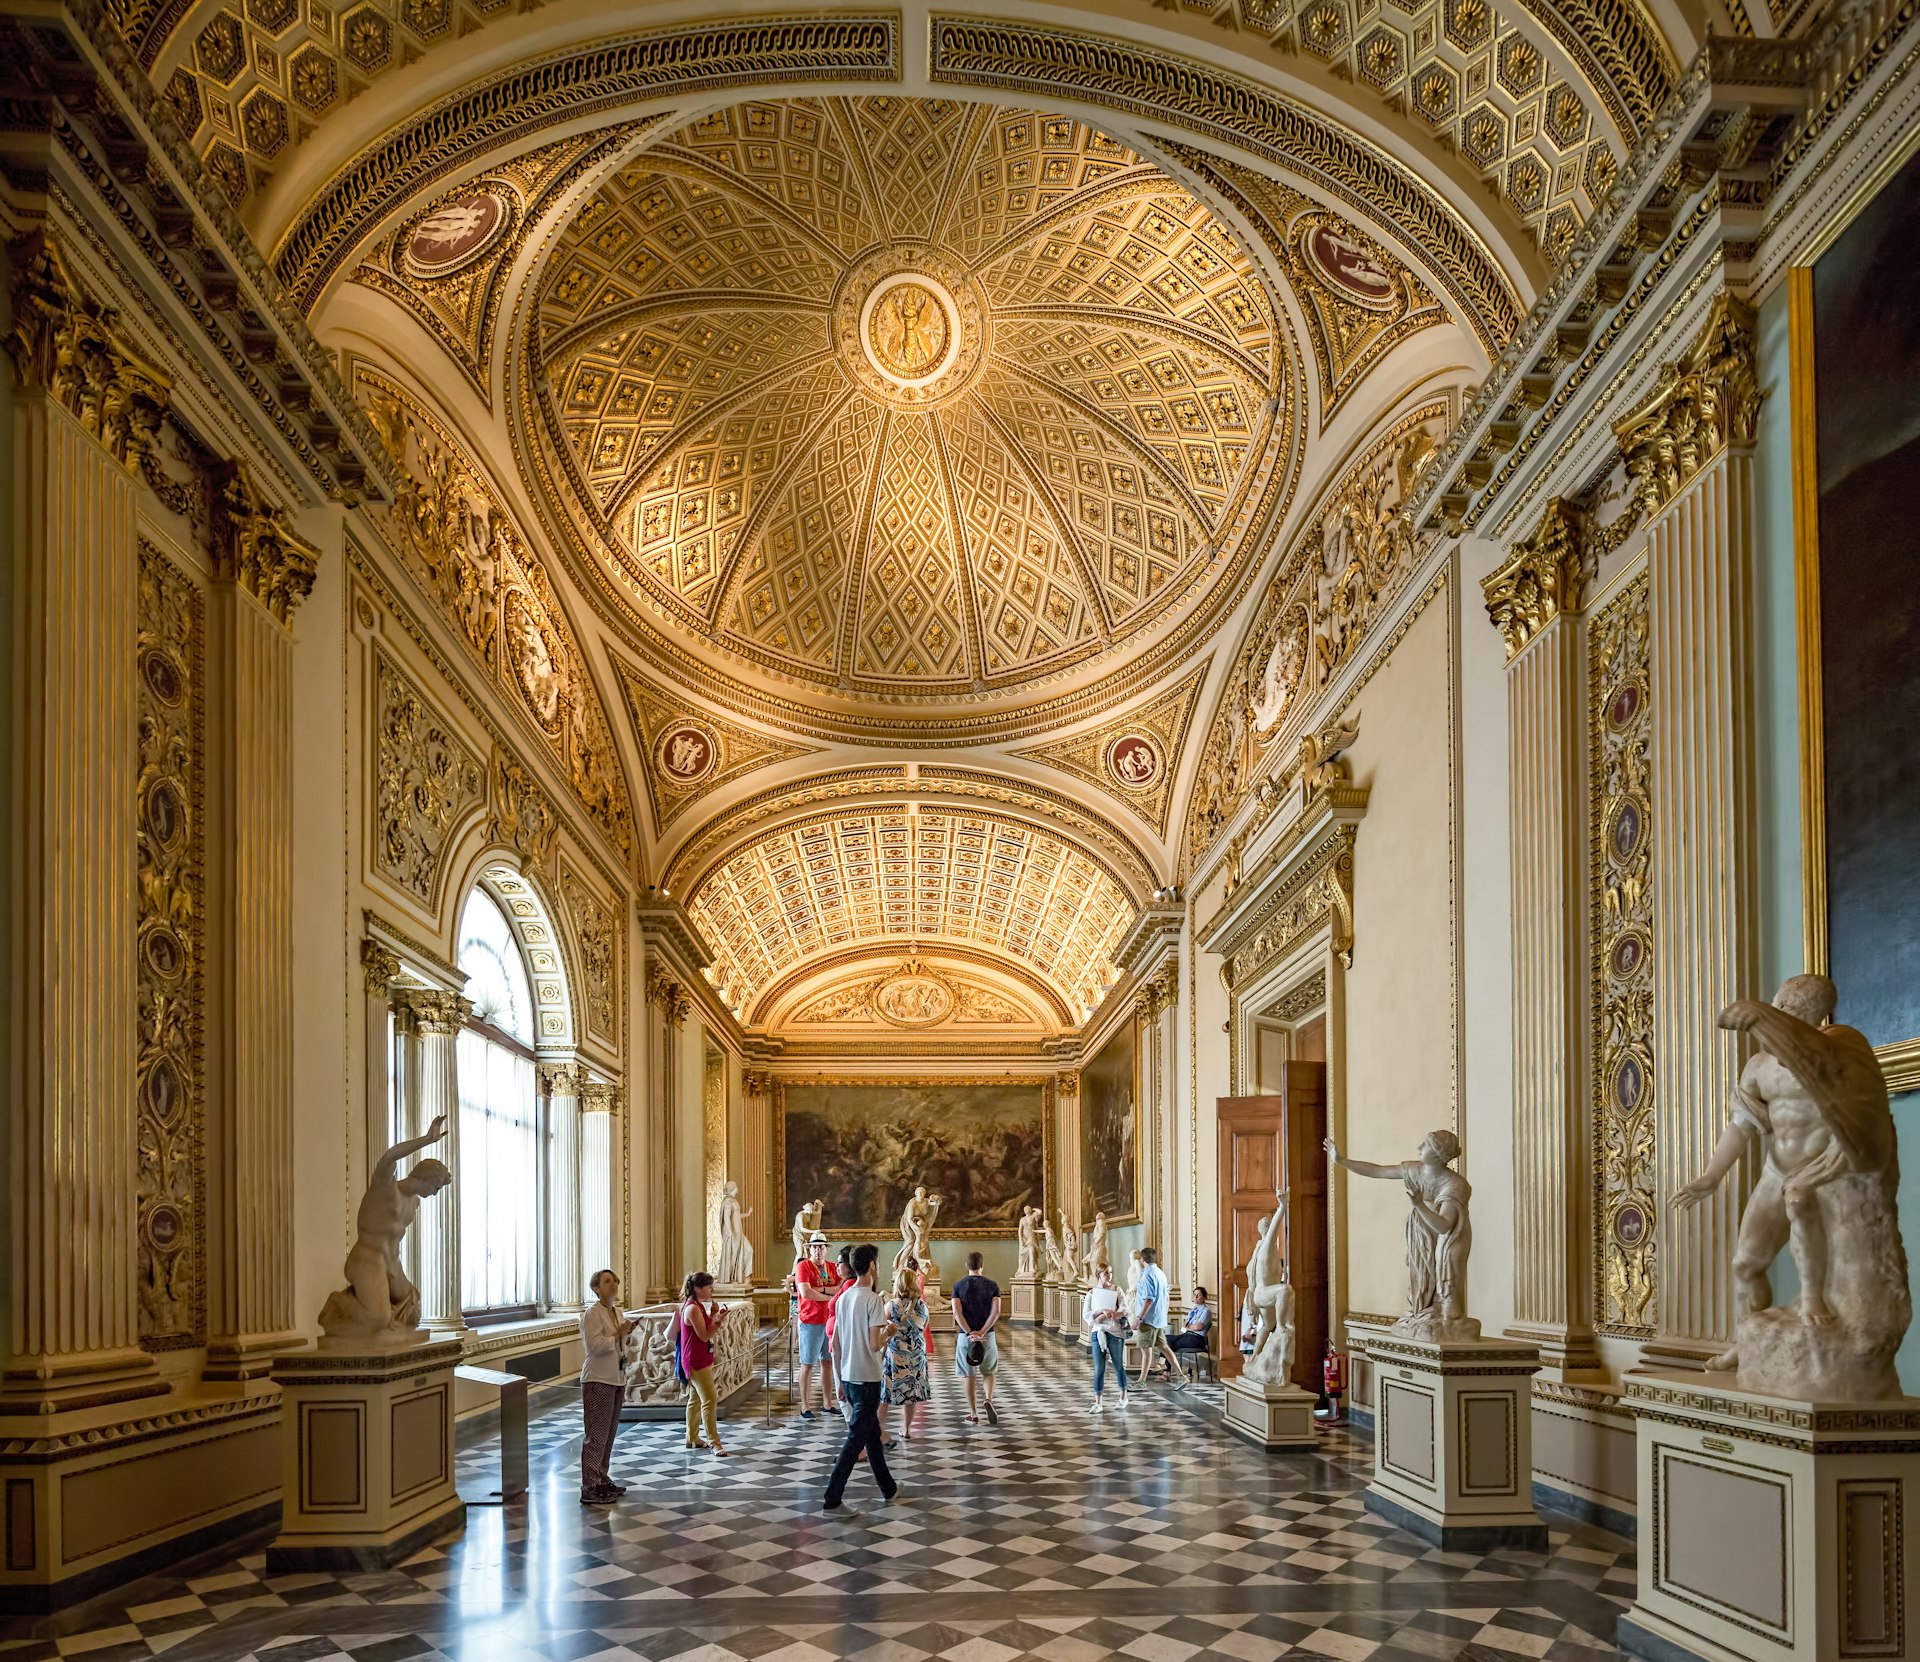 Visitors inside the Uffizi Gallery